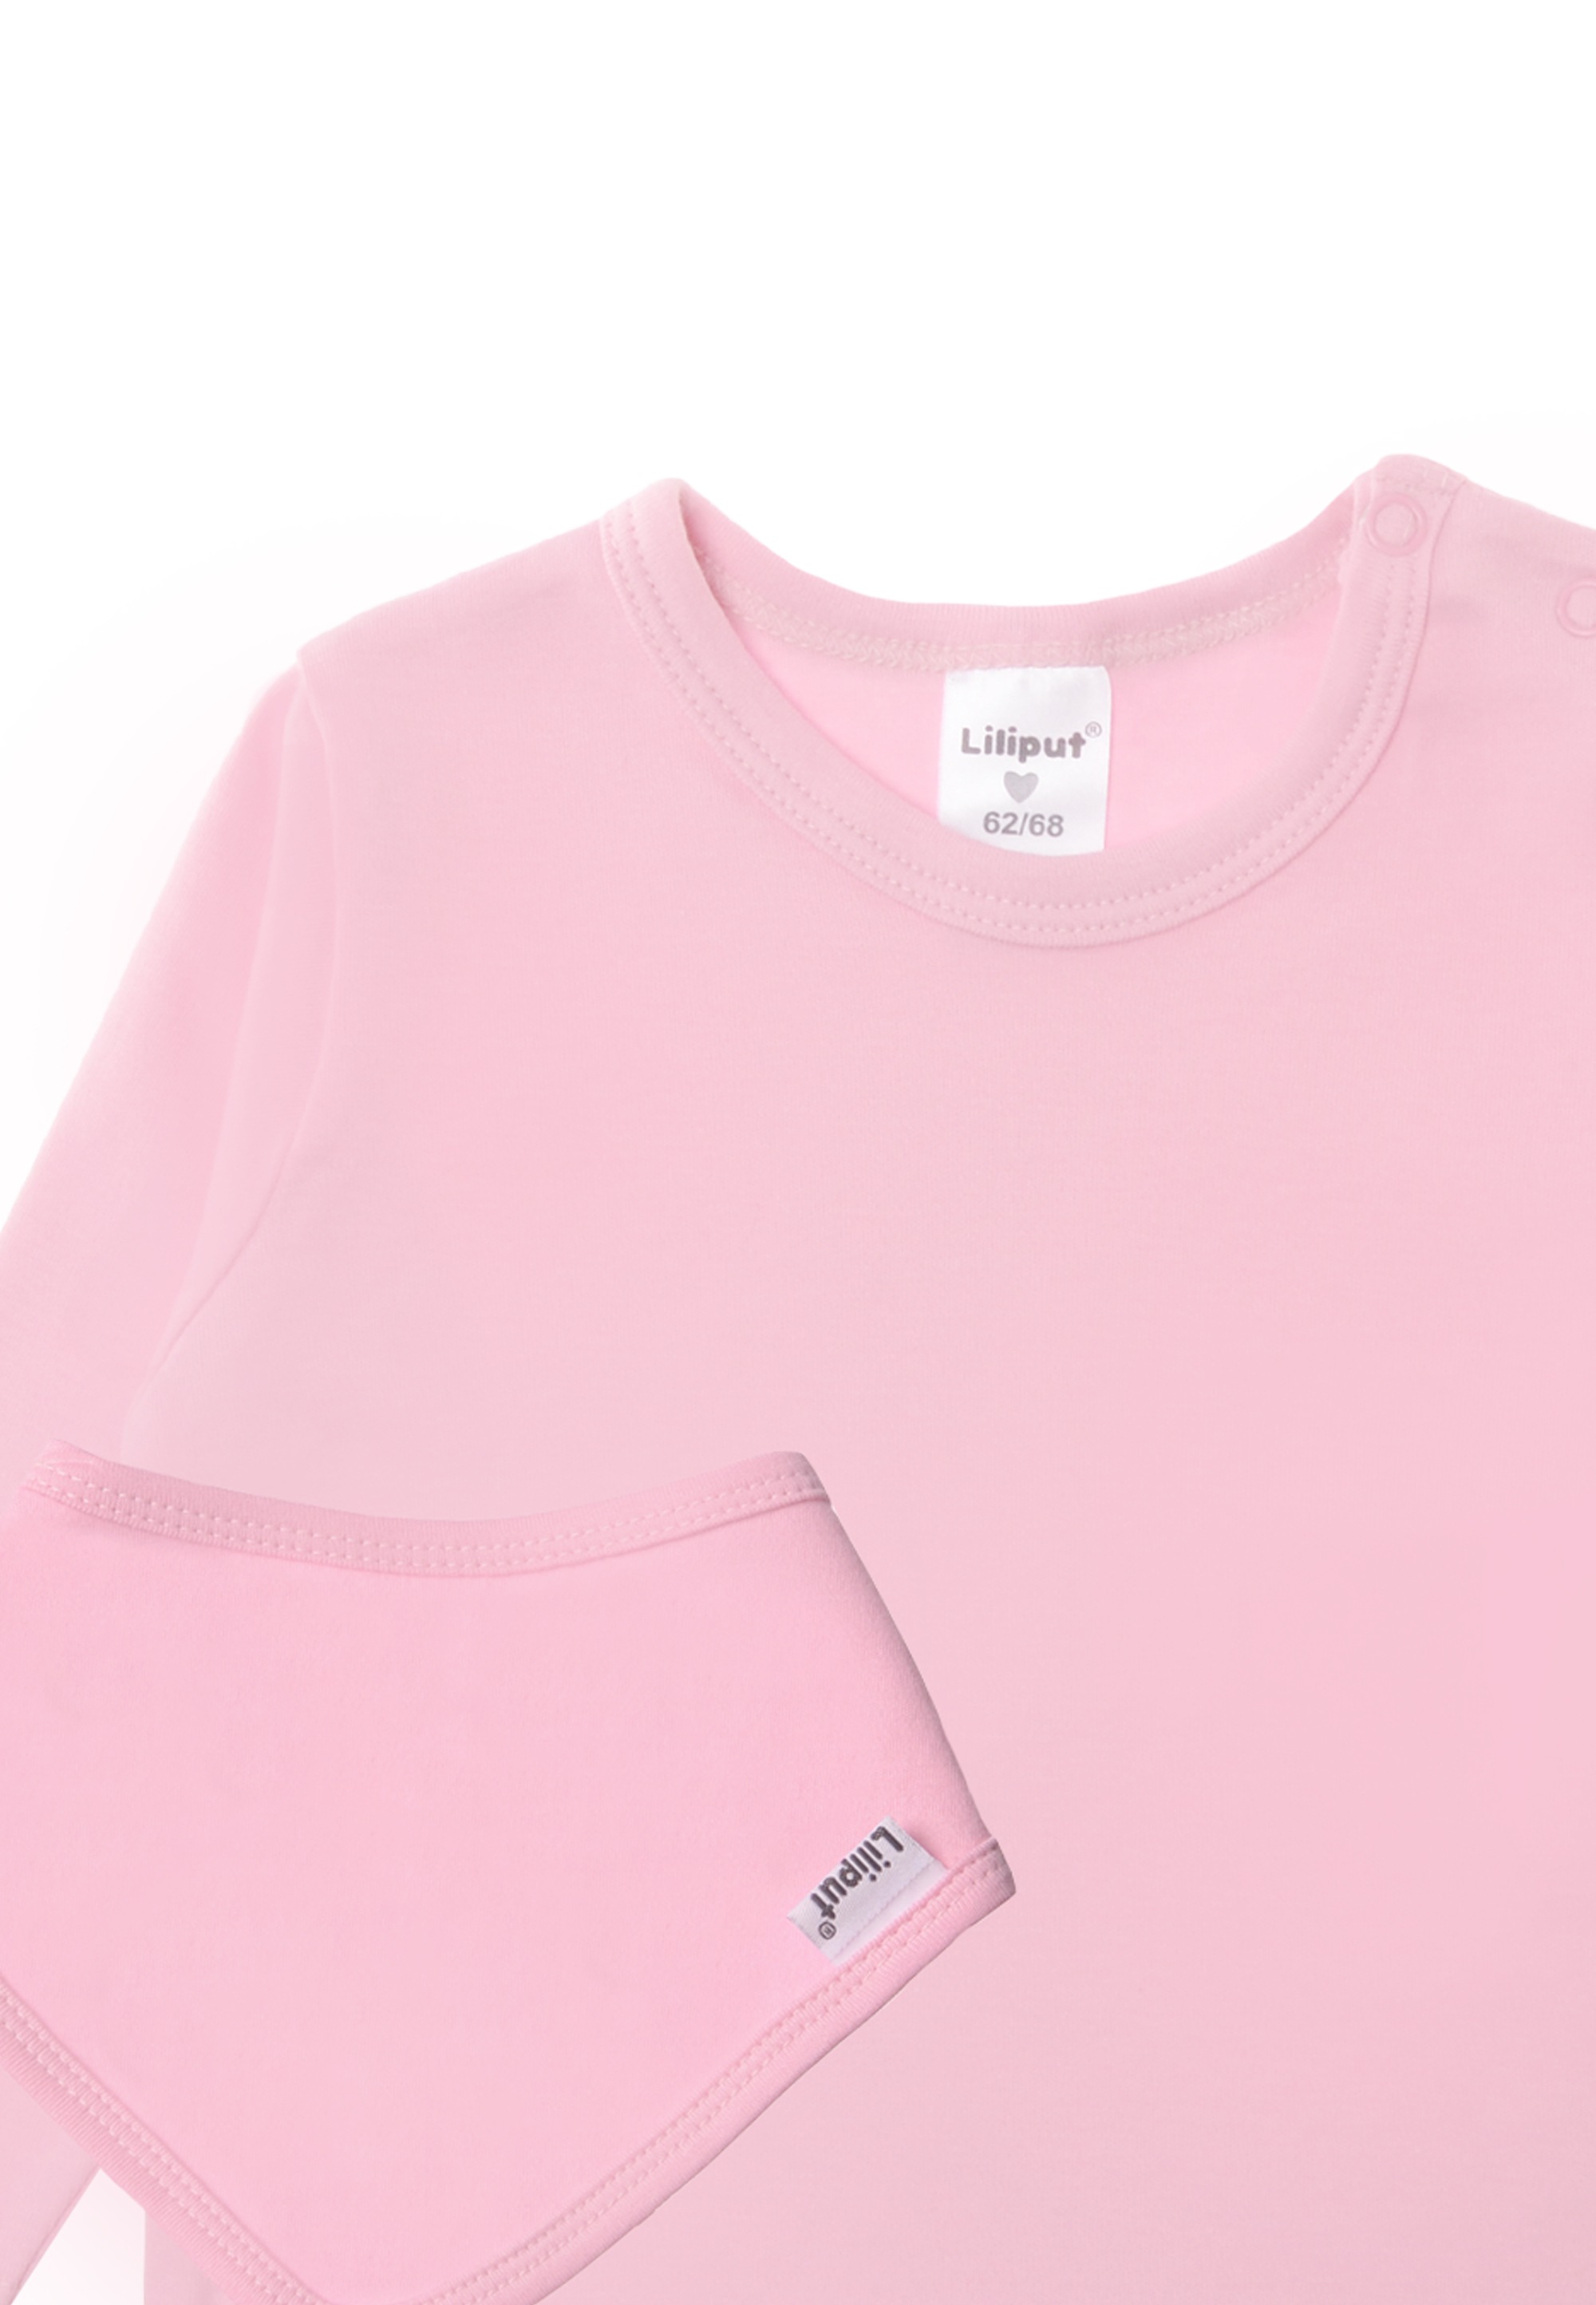 bestellen BAUR | reiner Liliput T-Shirt, online aus Bio-Baumwolle